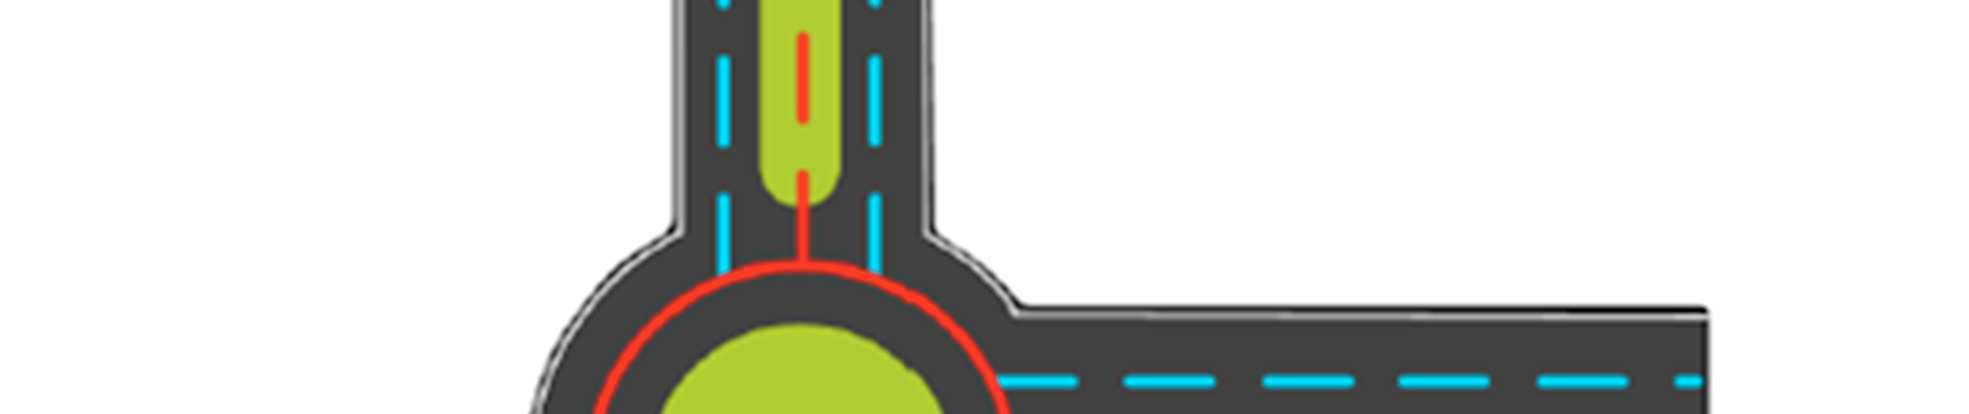 I den viste figur (figur 9) tilhører dele af rundkørslen både den røde og den grønne vej. Hvor en lænke tilhører flere veje, er en af disse veje udnævnt til den primære ejer af lænken. 3.5.